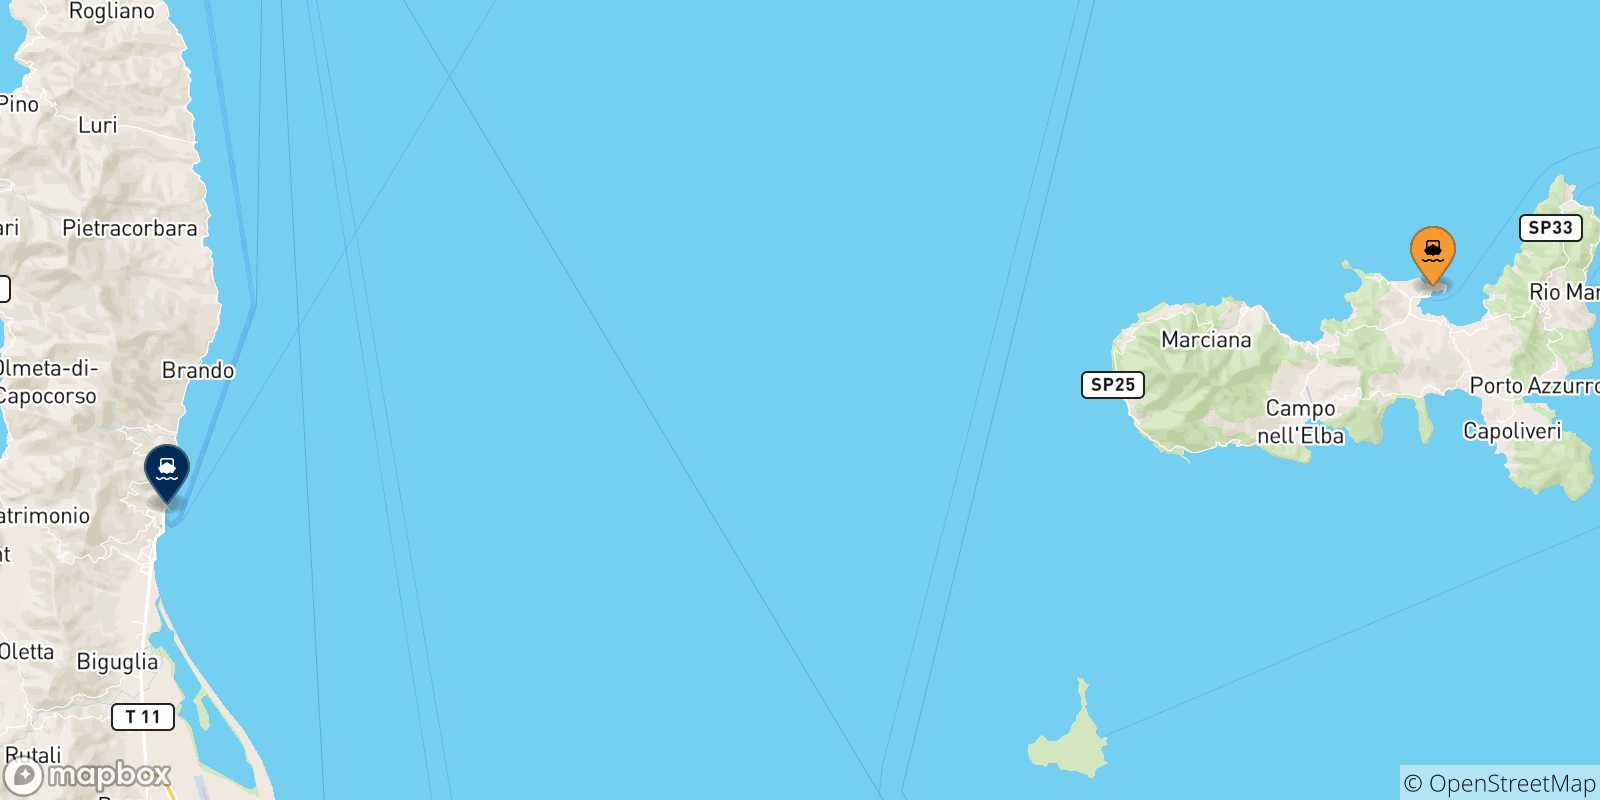 Mappa delle possibili rotte tra l'Isola D'elba e la Francia